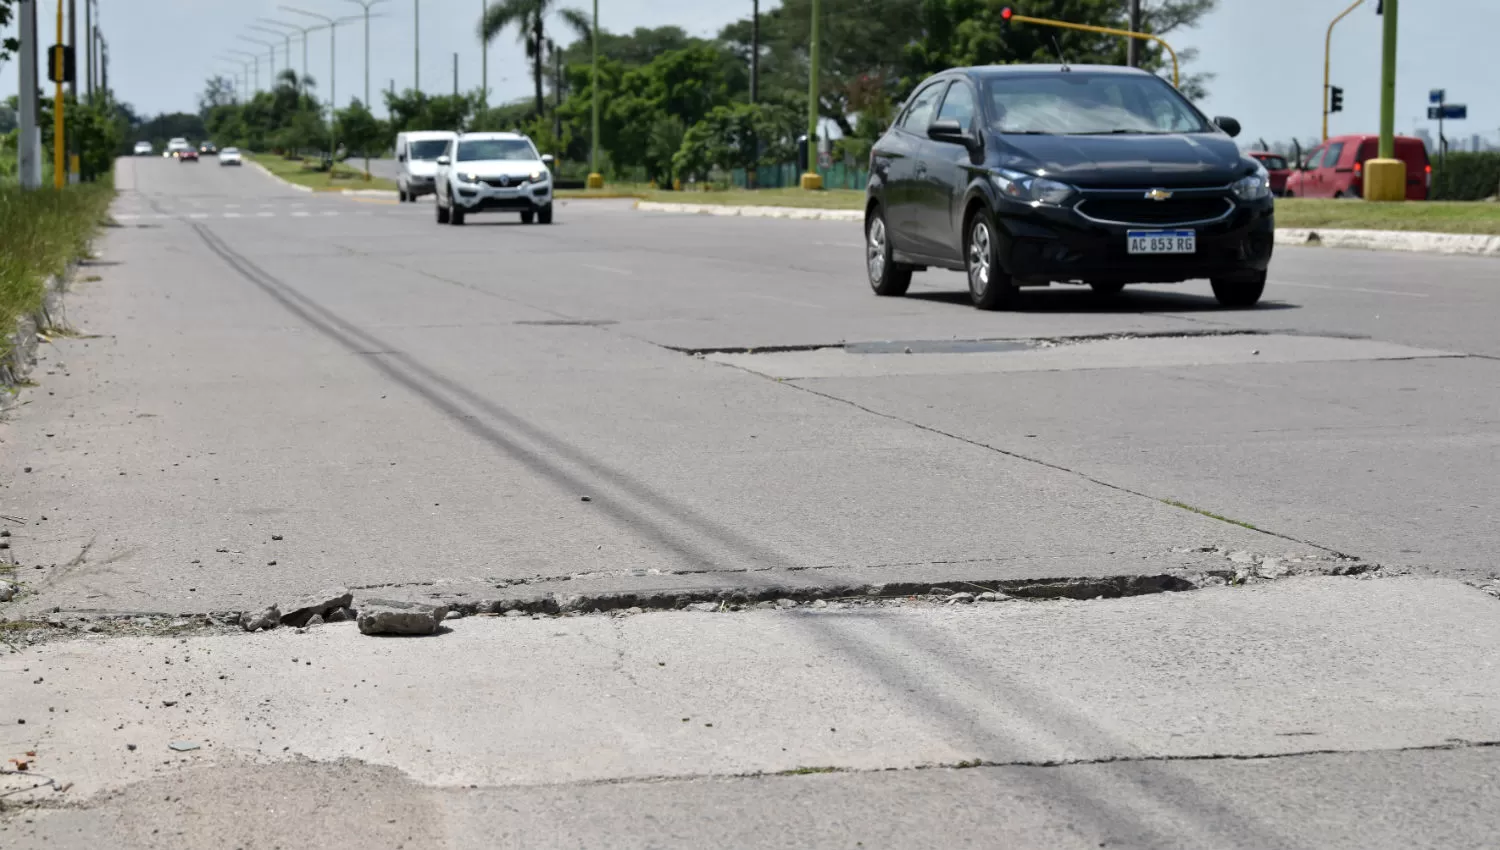 PAVIMENTO EN MAL ESTADO. Las grietas y los desniveles que hay en el pavimento pueden romper los vehículos o causar accidentes.